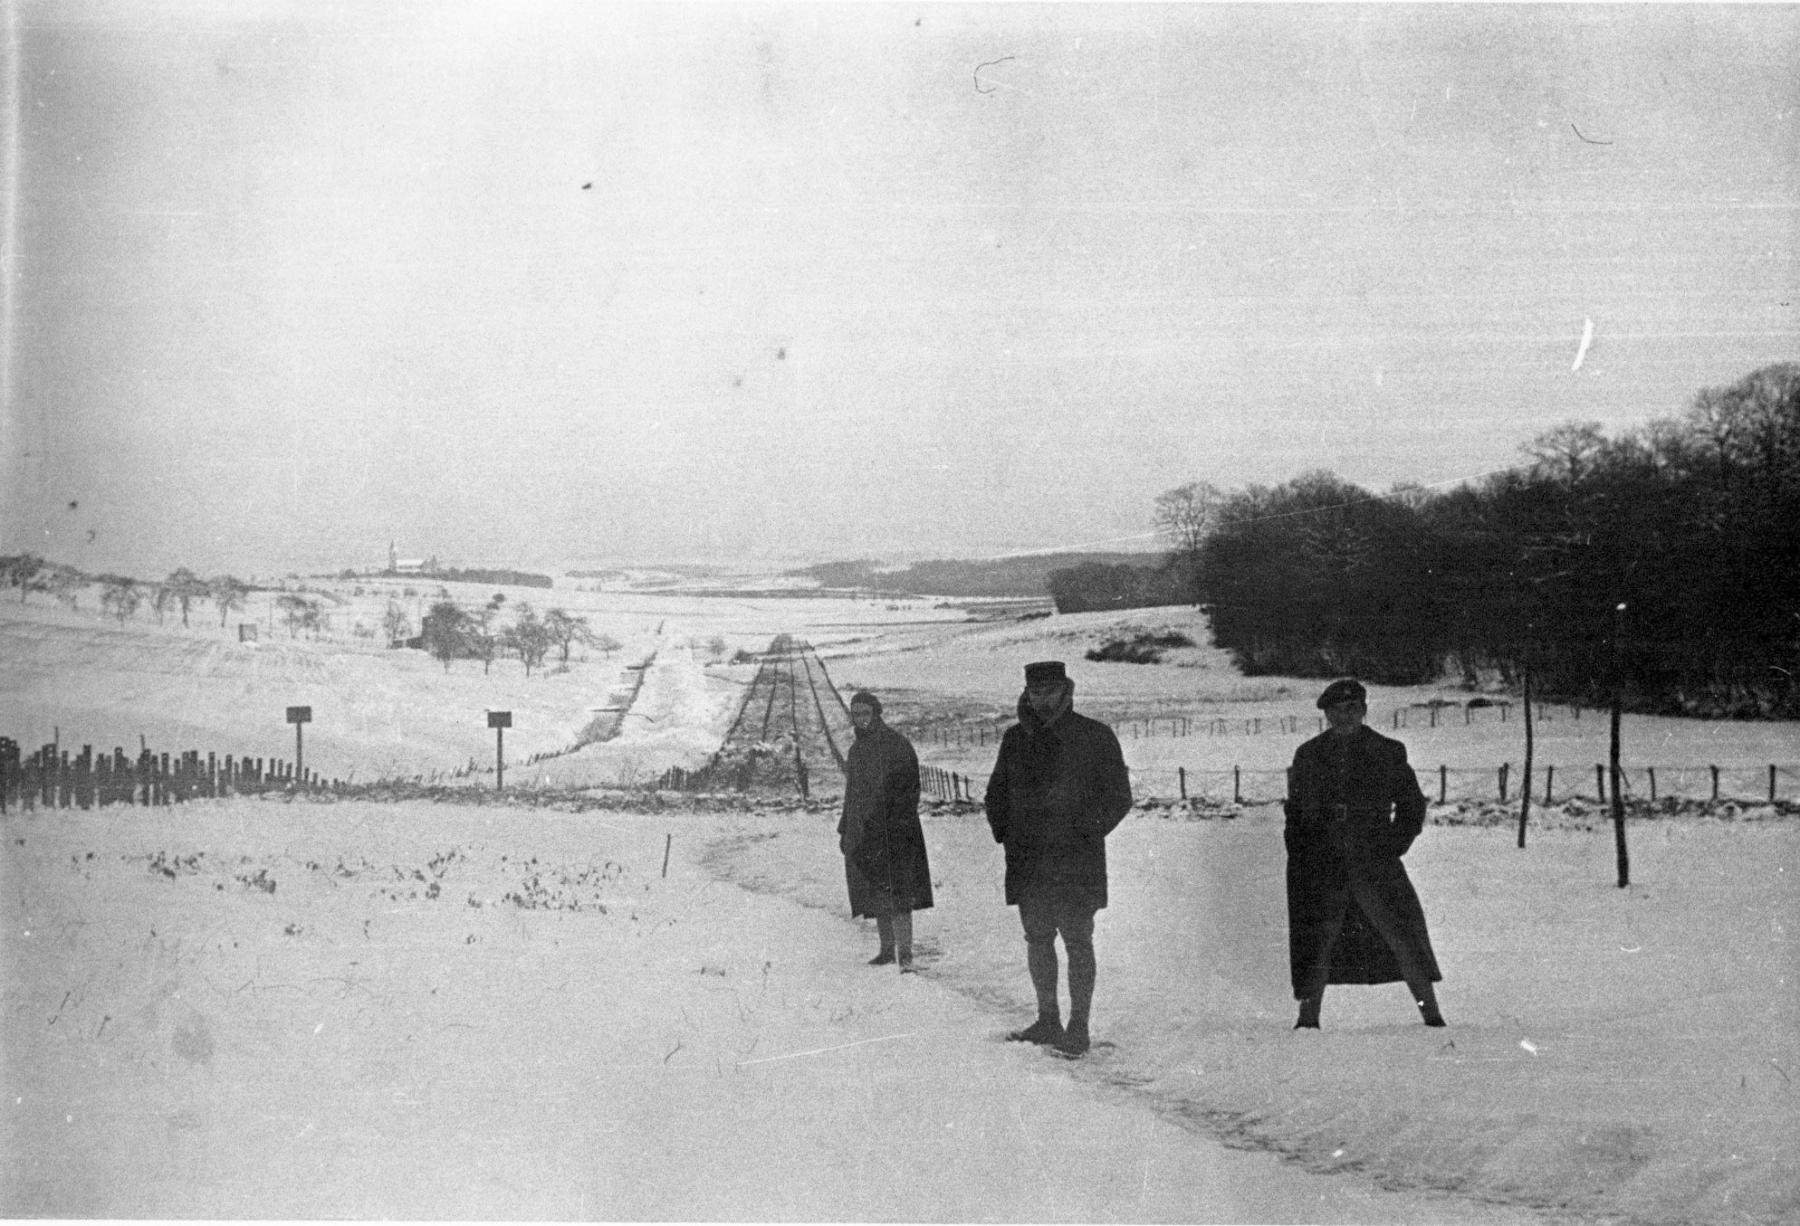 Ligne Maginot - BOUST - C44 - (Casemate d'infanterie - Simple) - Le ravin de Boust, fossé antichar et réseau bas vu depuis la casemate